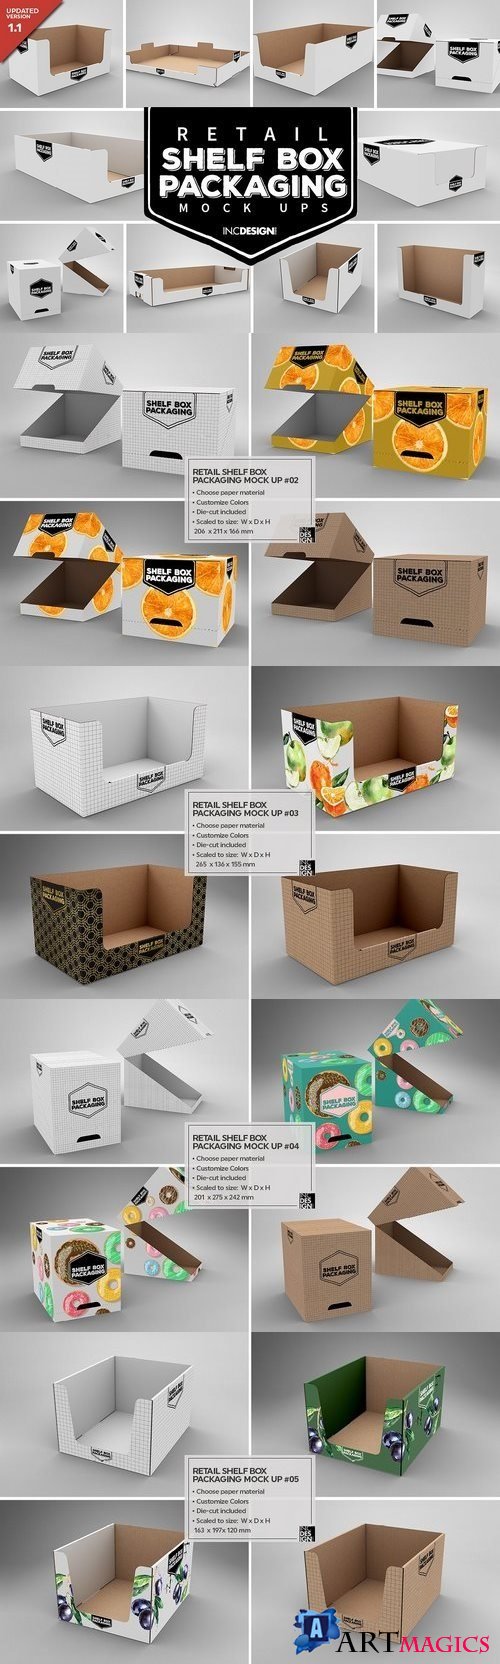 Retail Shelf Box Packaging MockUps1 - 1404860